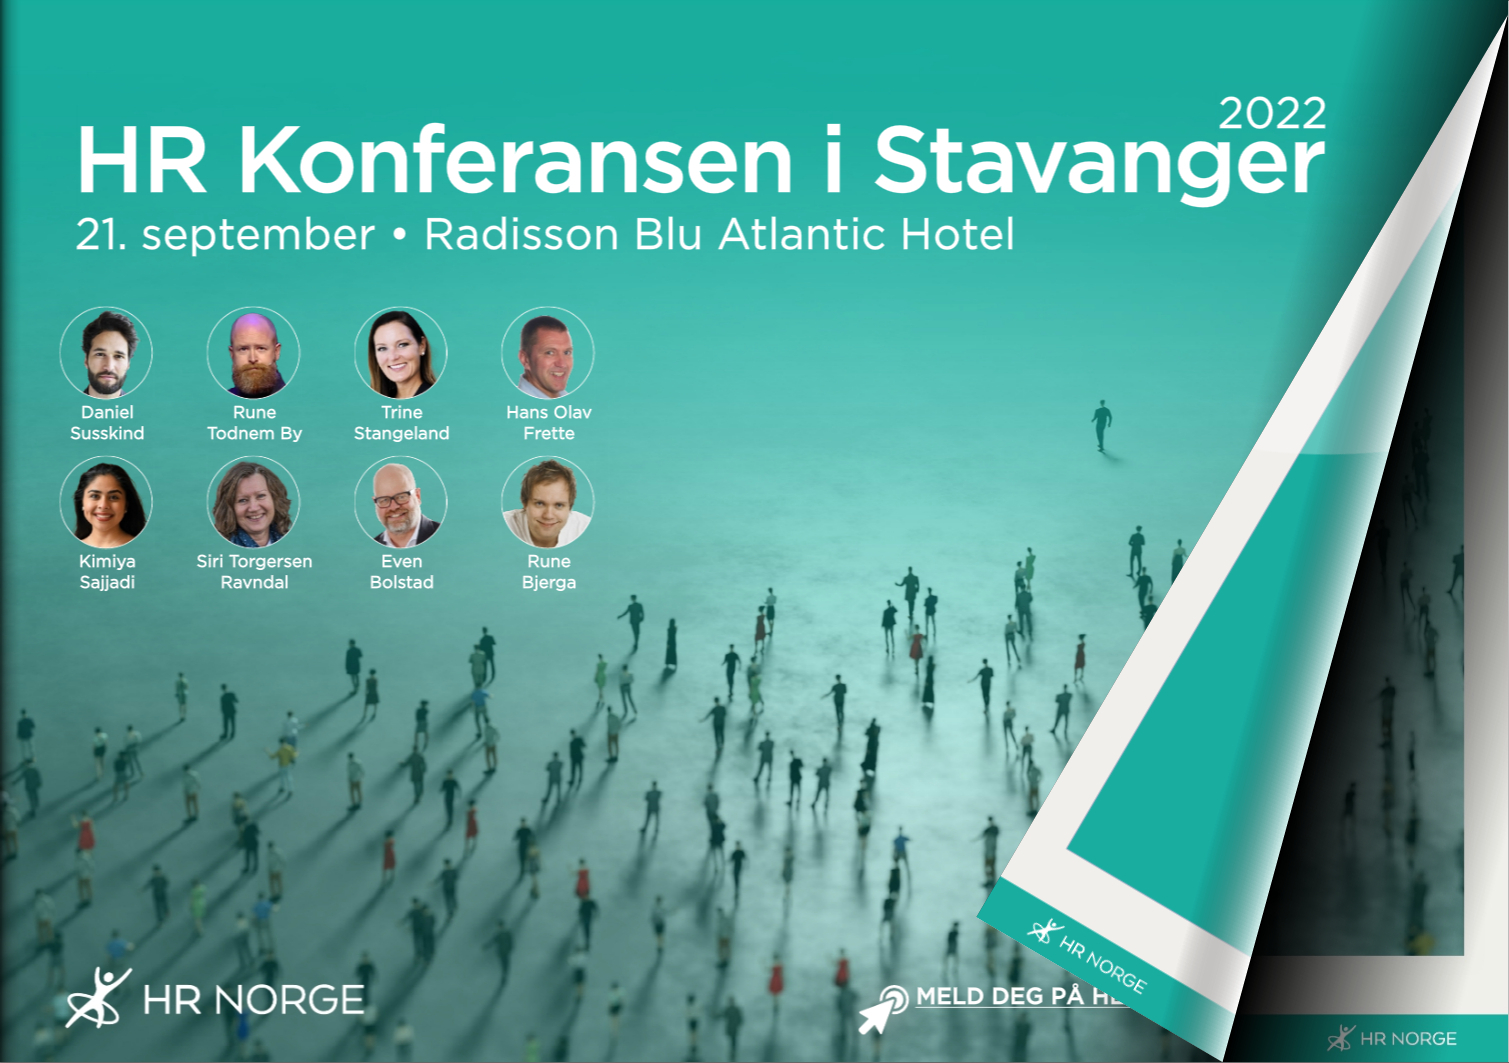 HR Konferansen i Stavanger 2022